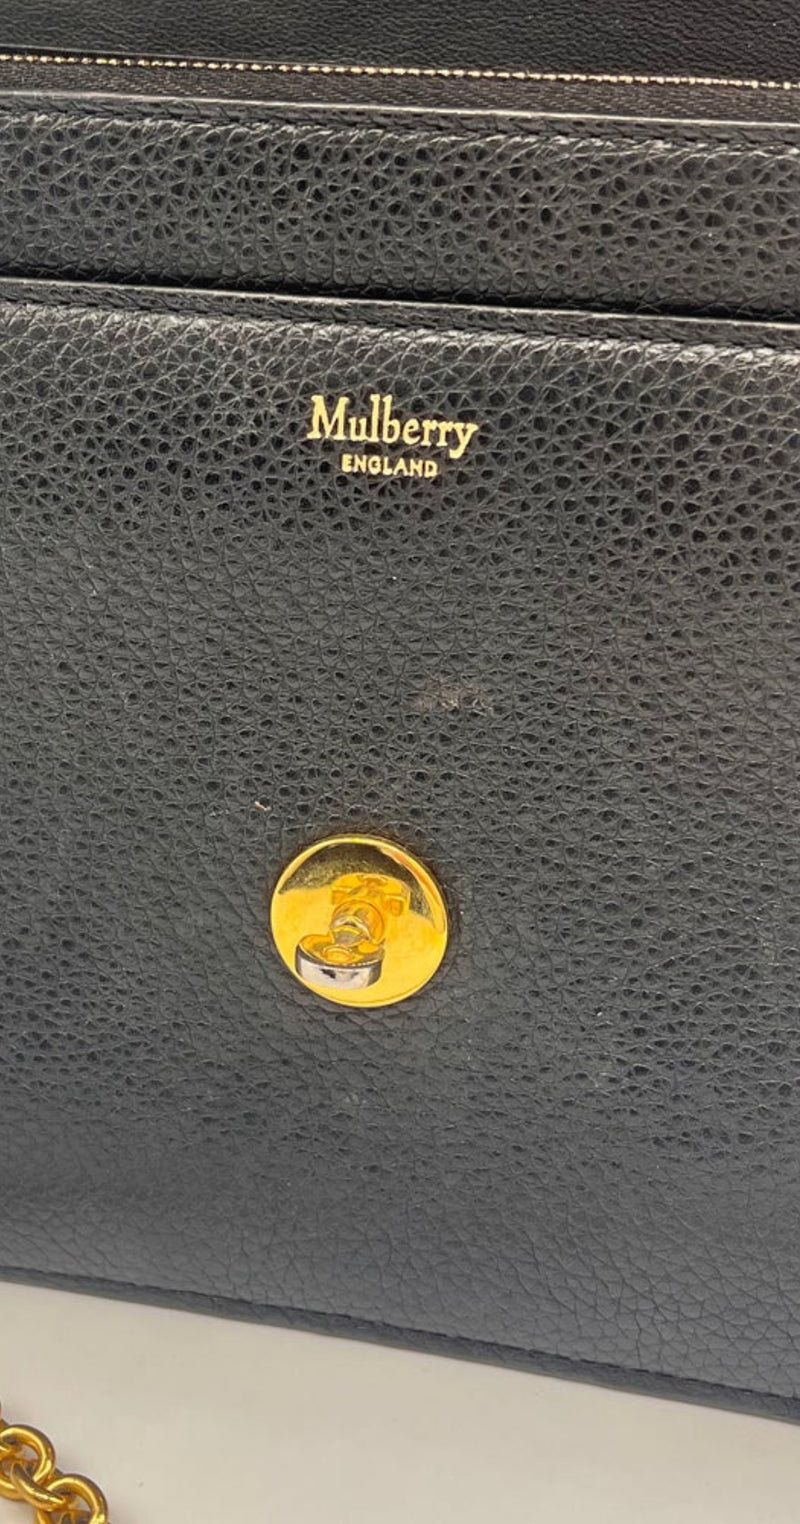 Mulberry Black Side Bag